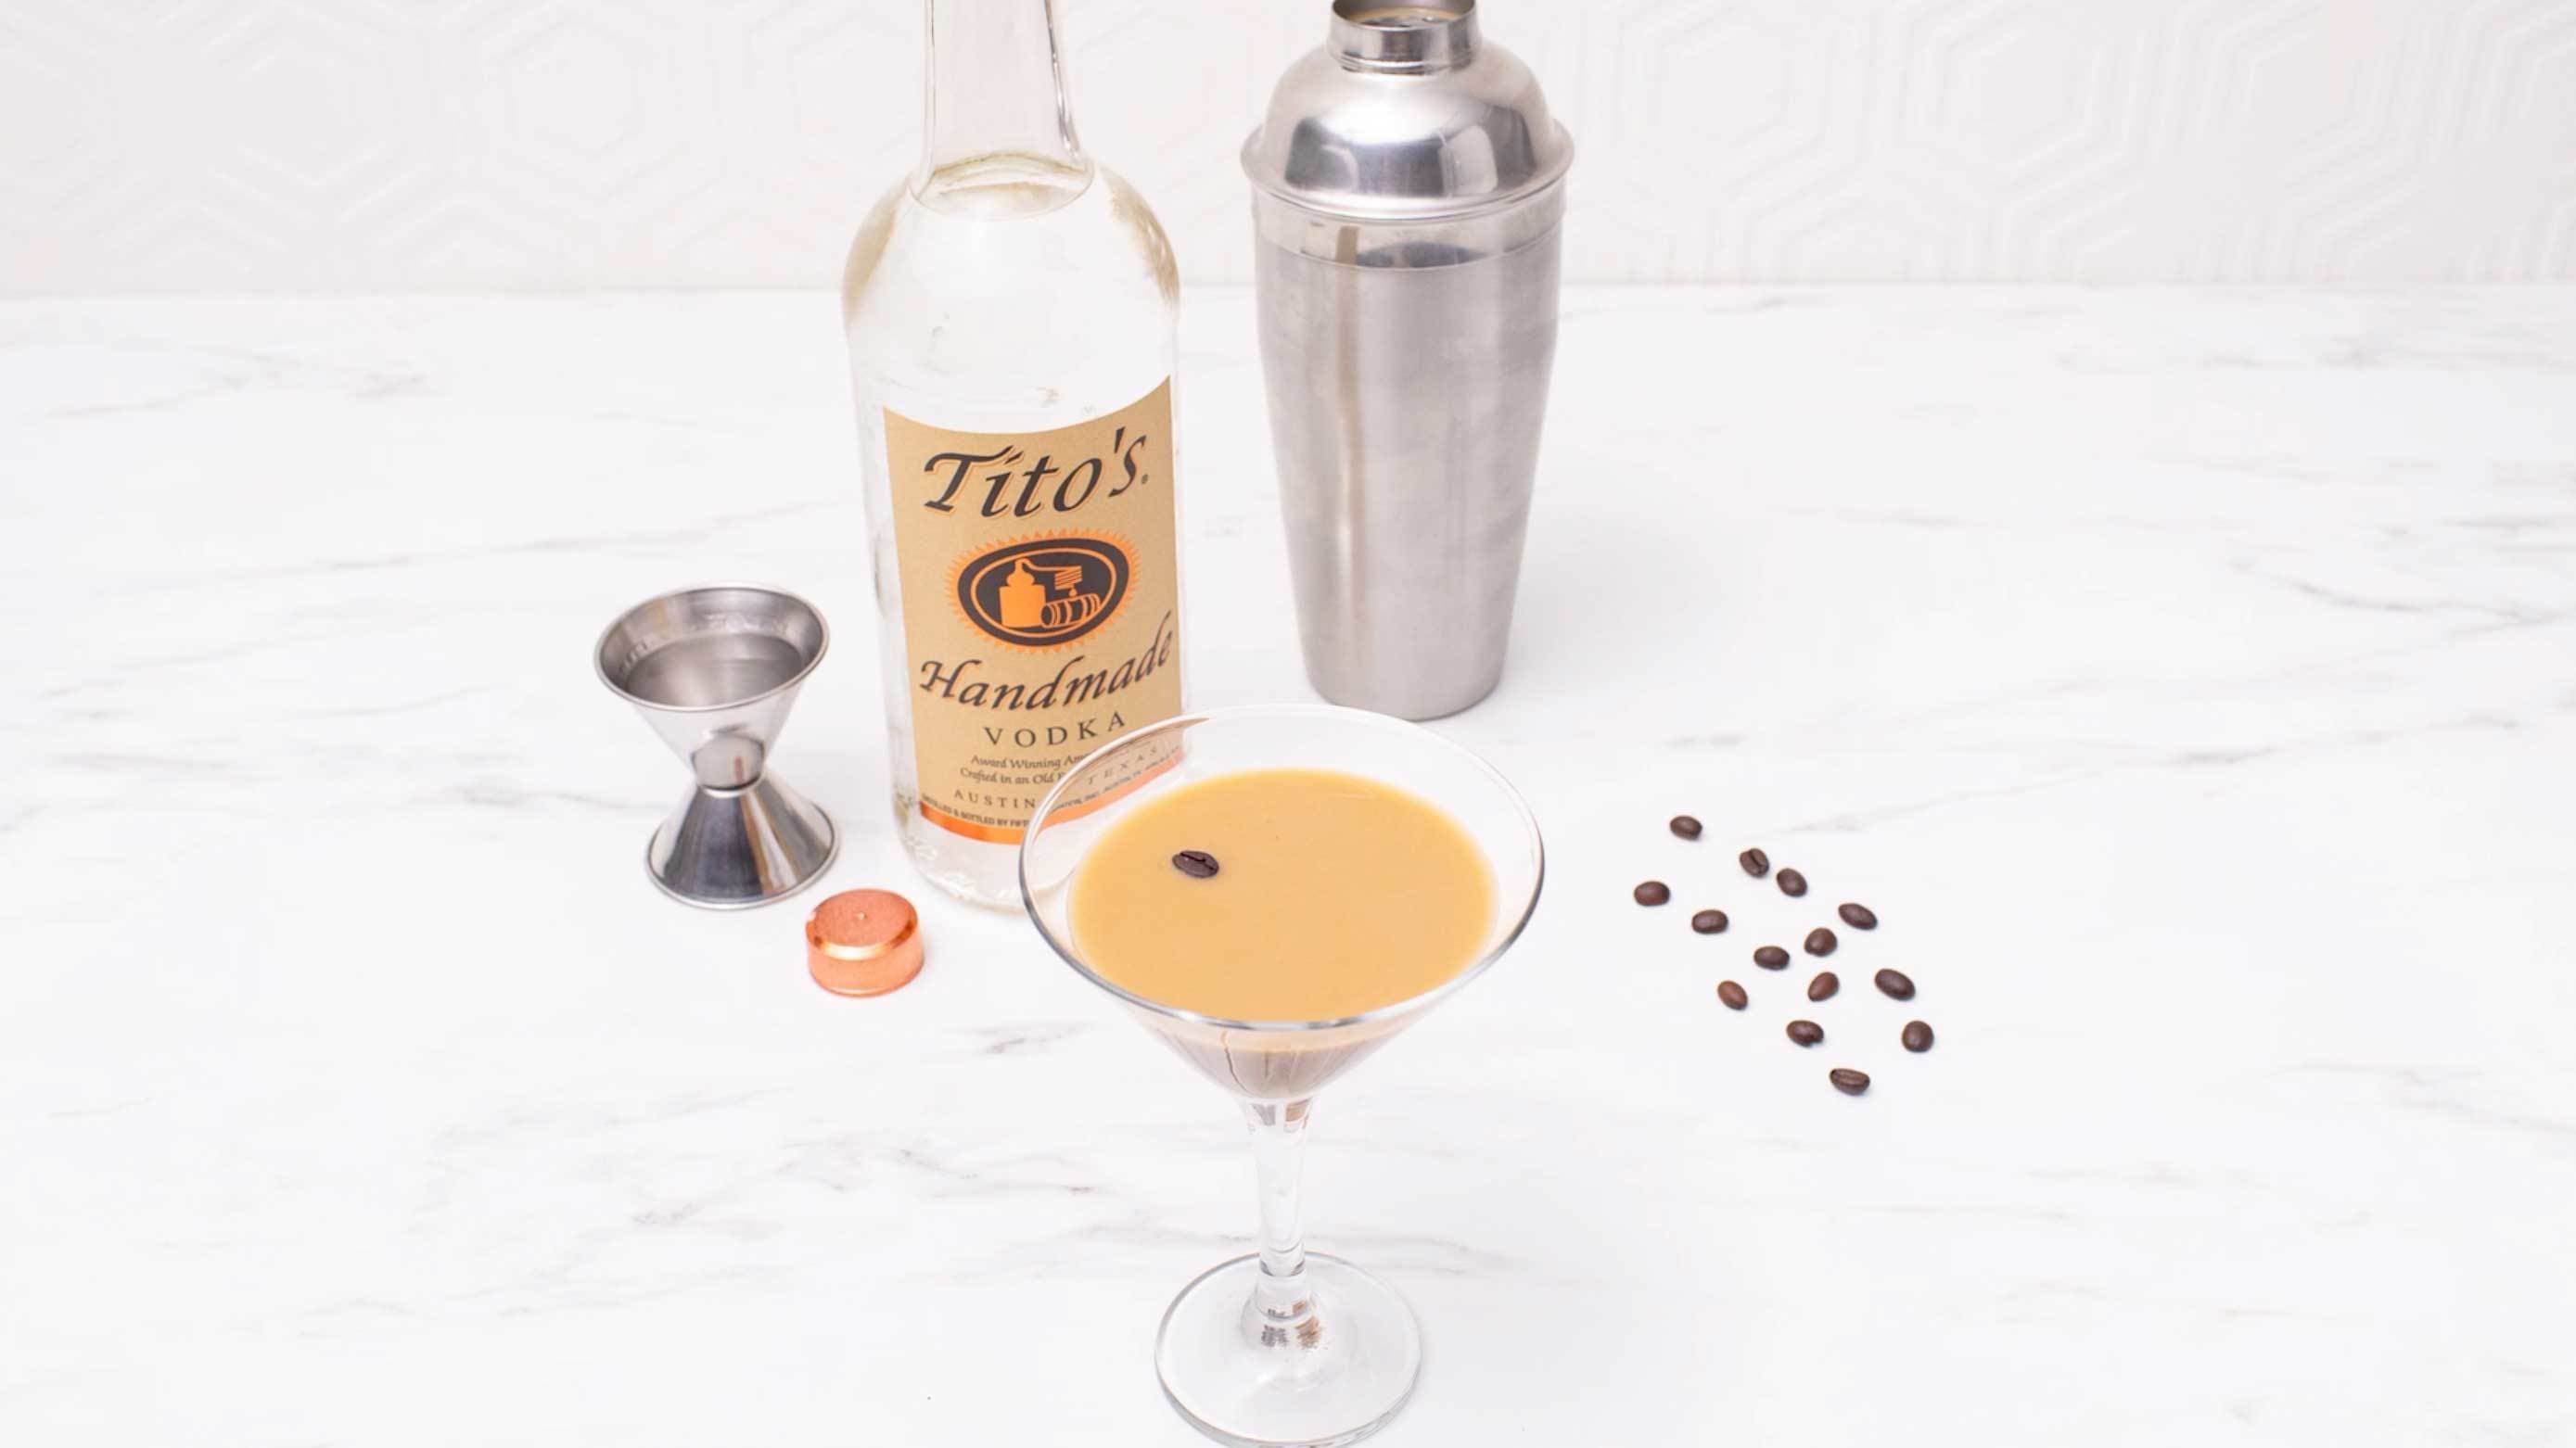 Tito's Espresso Martini garnished with espresso beans next to a bottle of Tito's Handmade Vodka